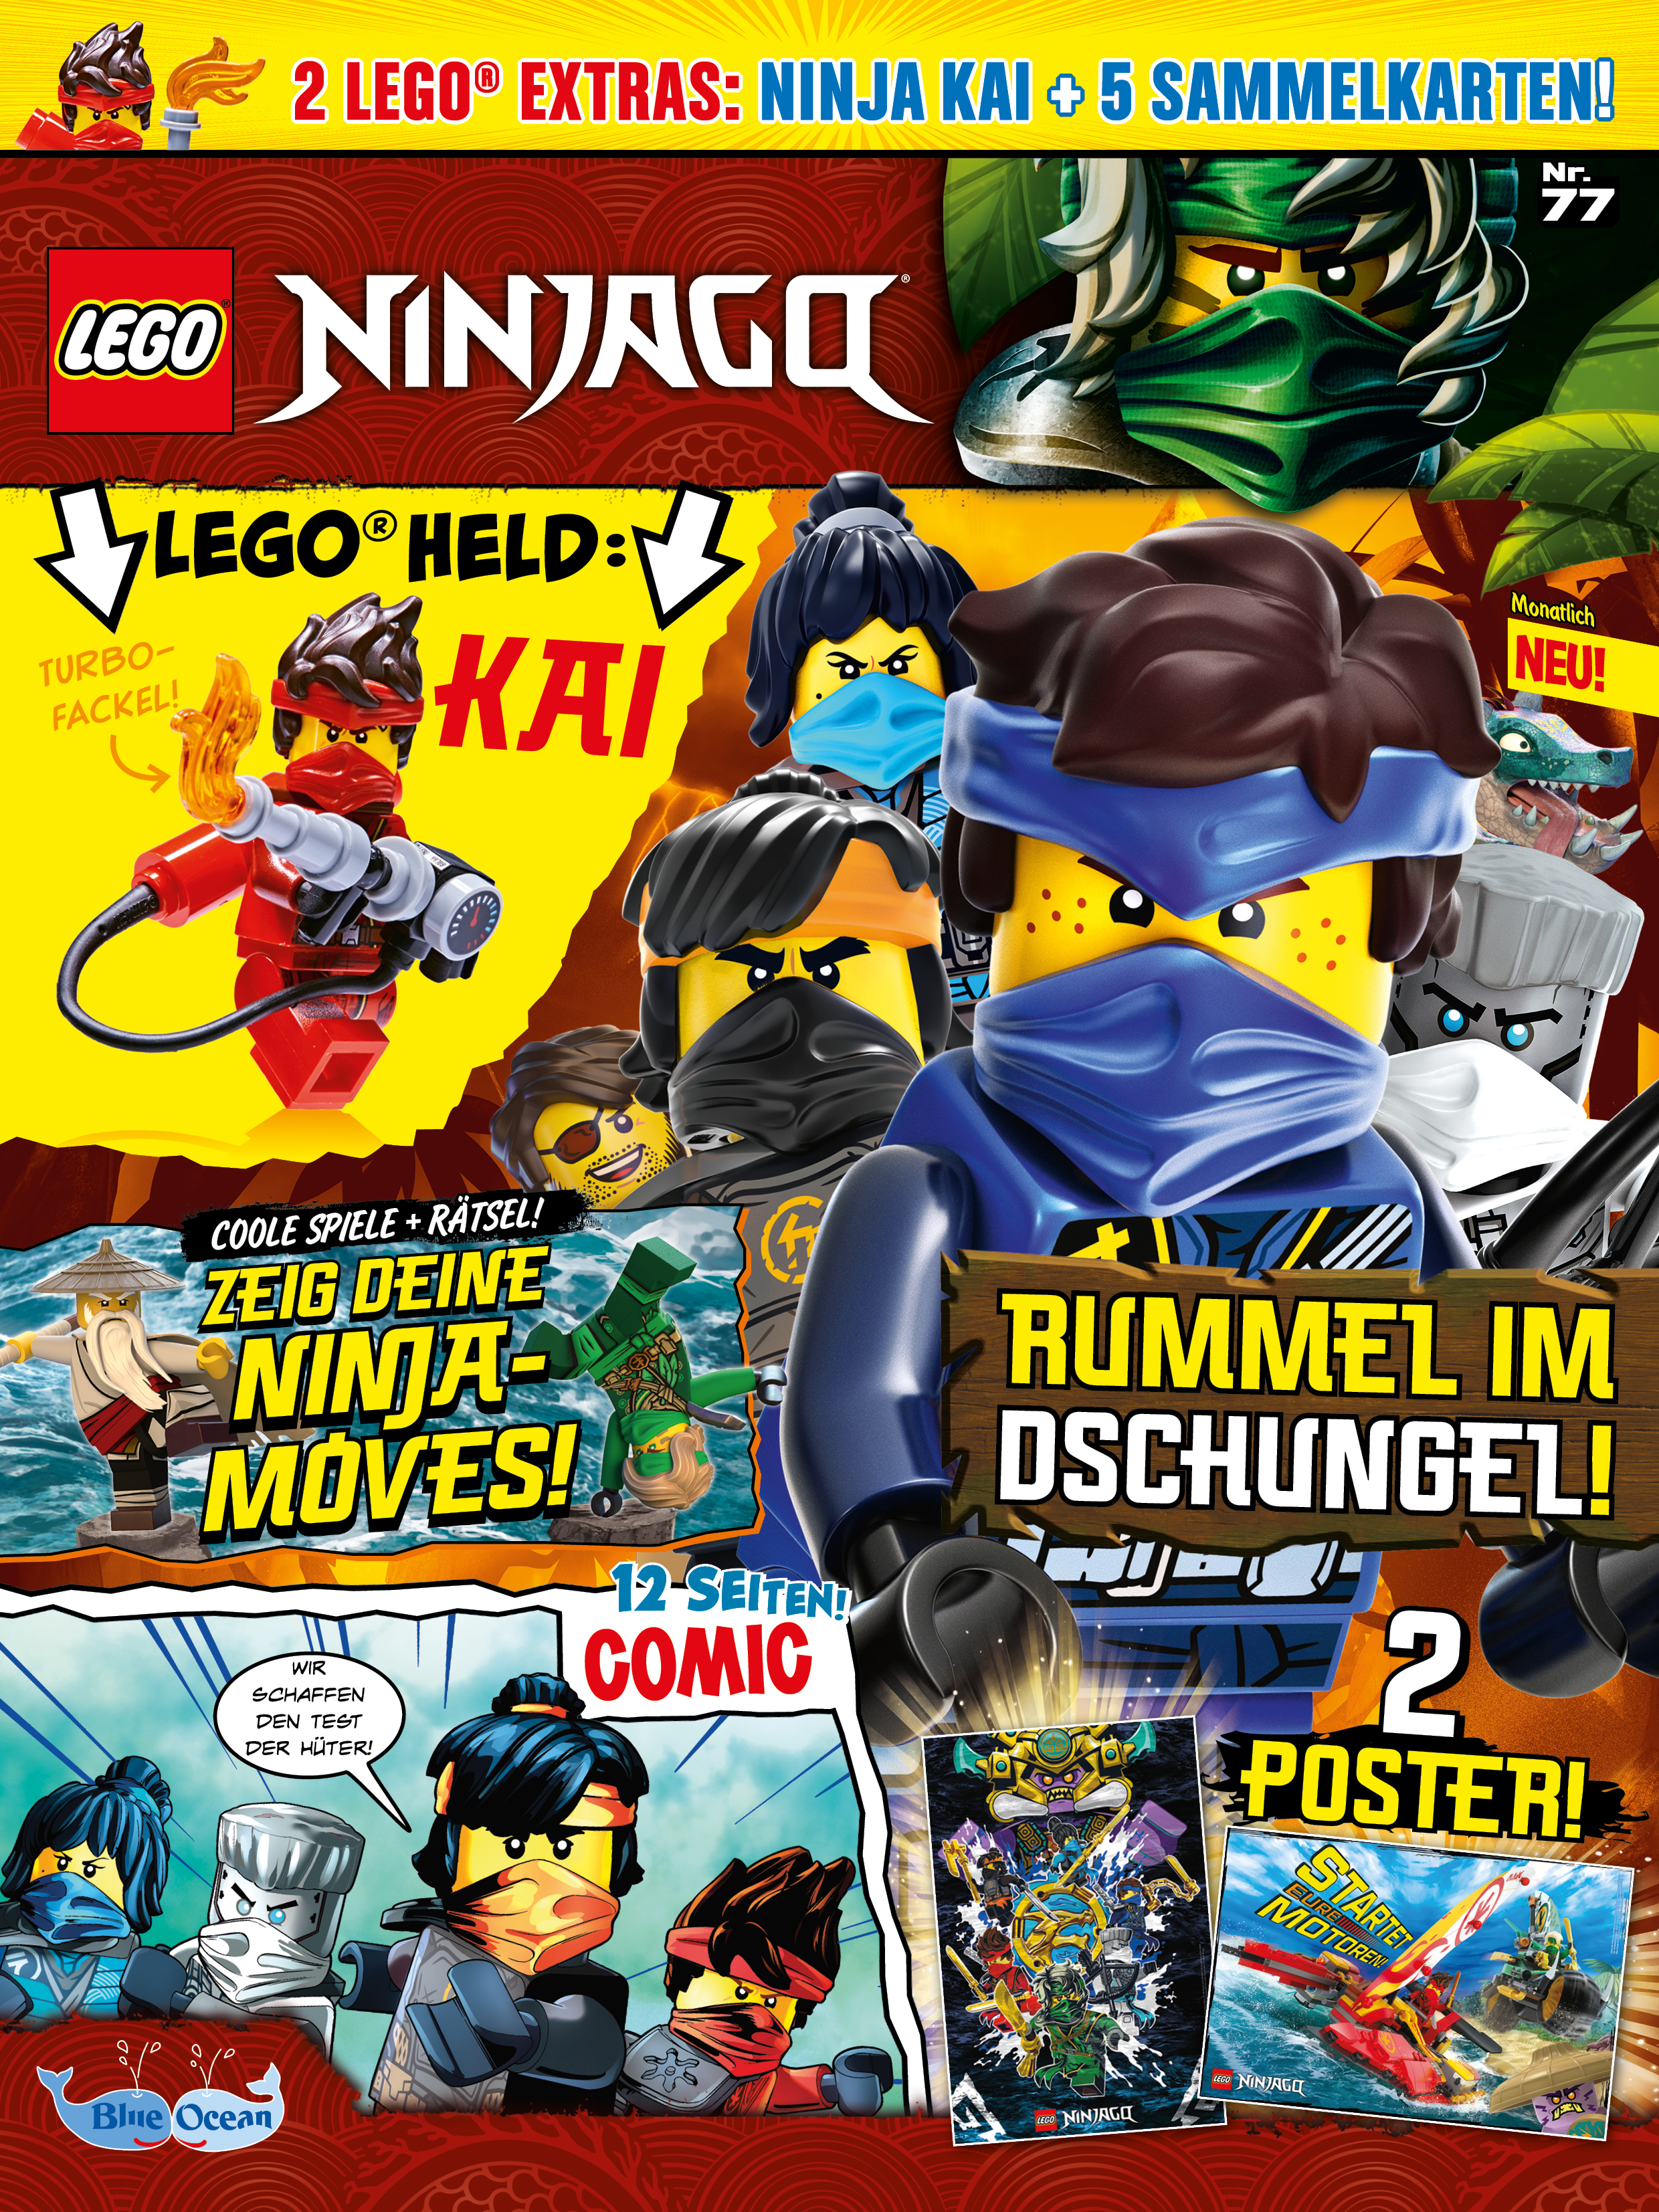 LEGO Ninjago 37 mit Ninja Nya Magazin Nr 